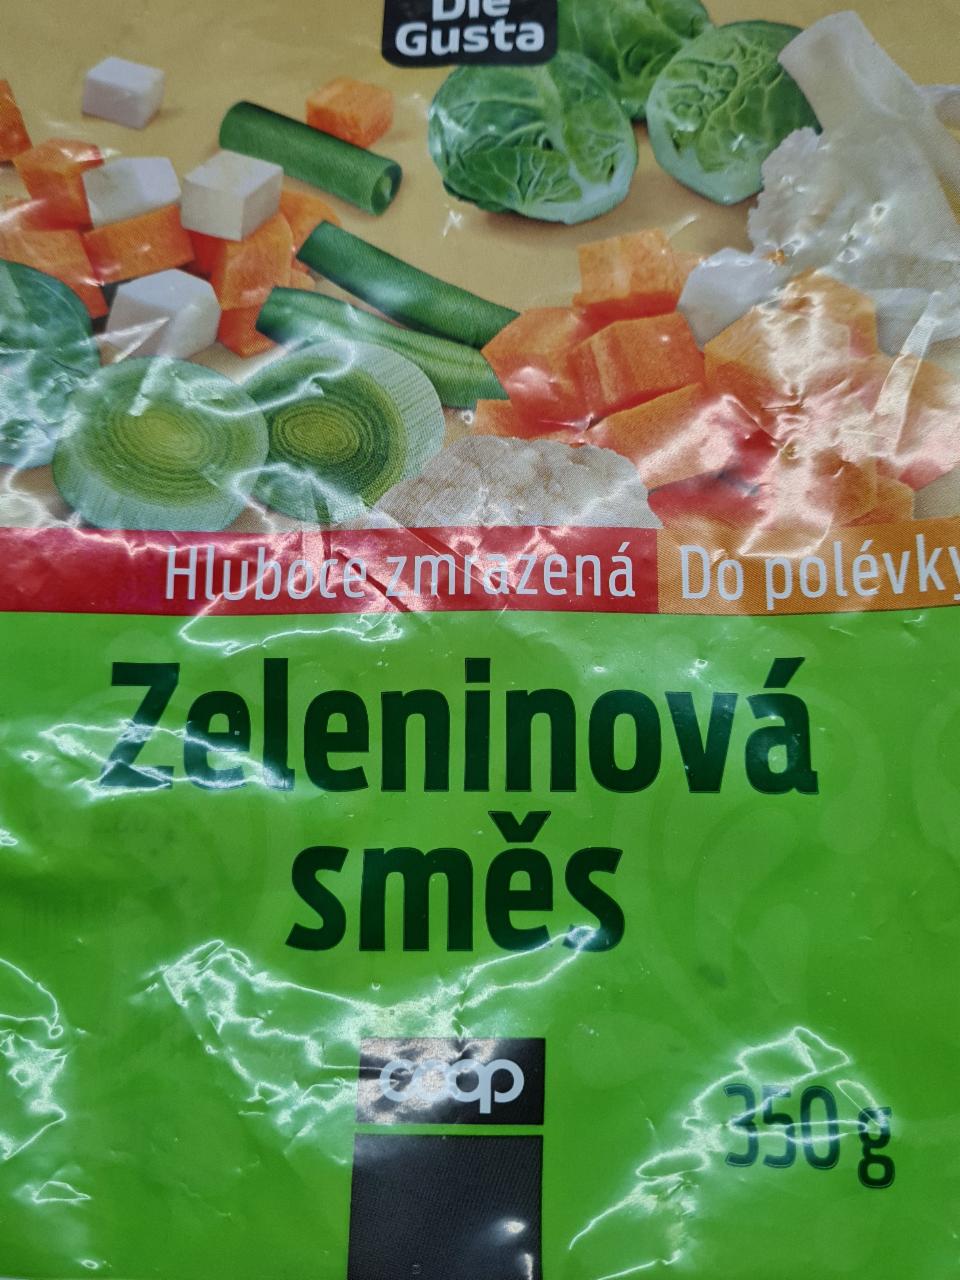 Fotografie - Zeleninová směs do polévky Dle Gusta